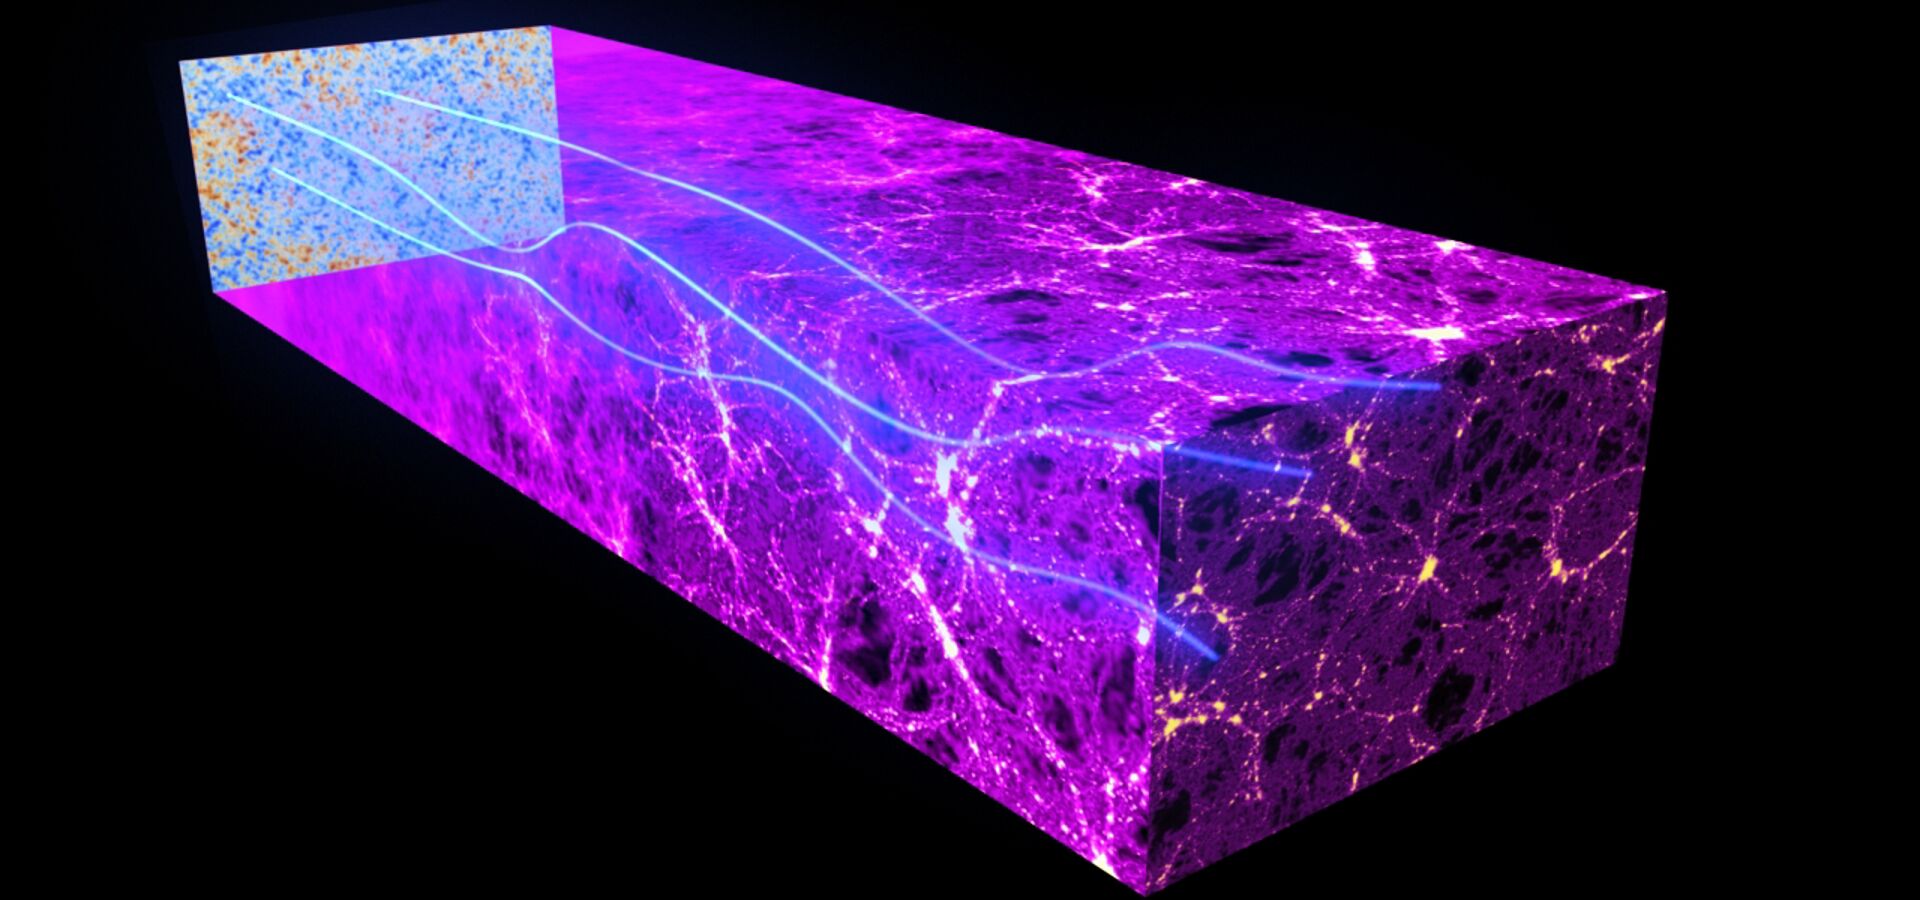 Rastreo de la materia oscura a través del espectro y del cosmos